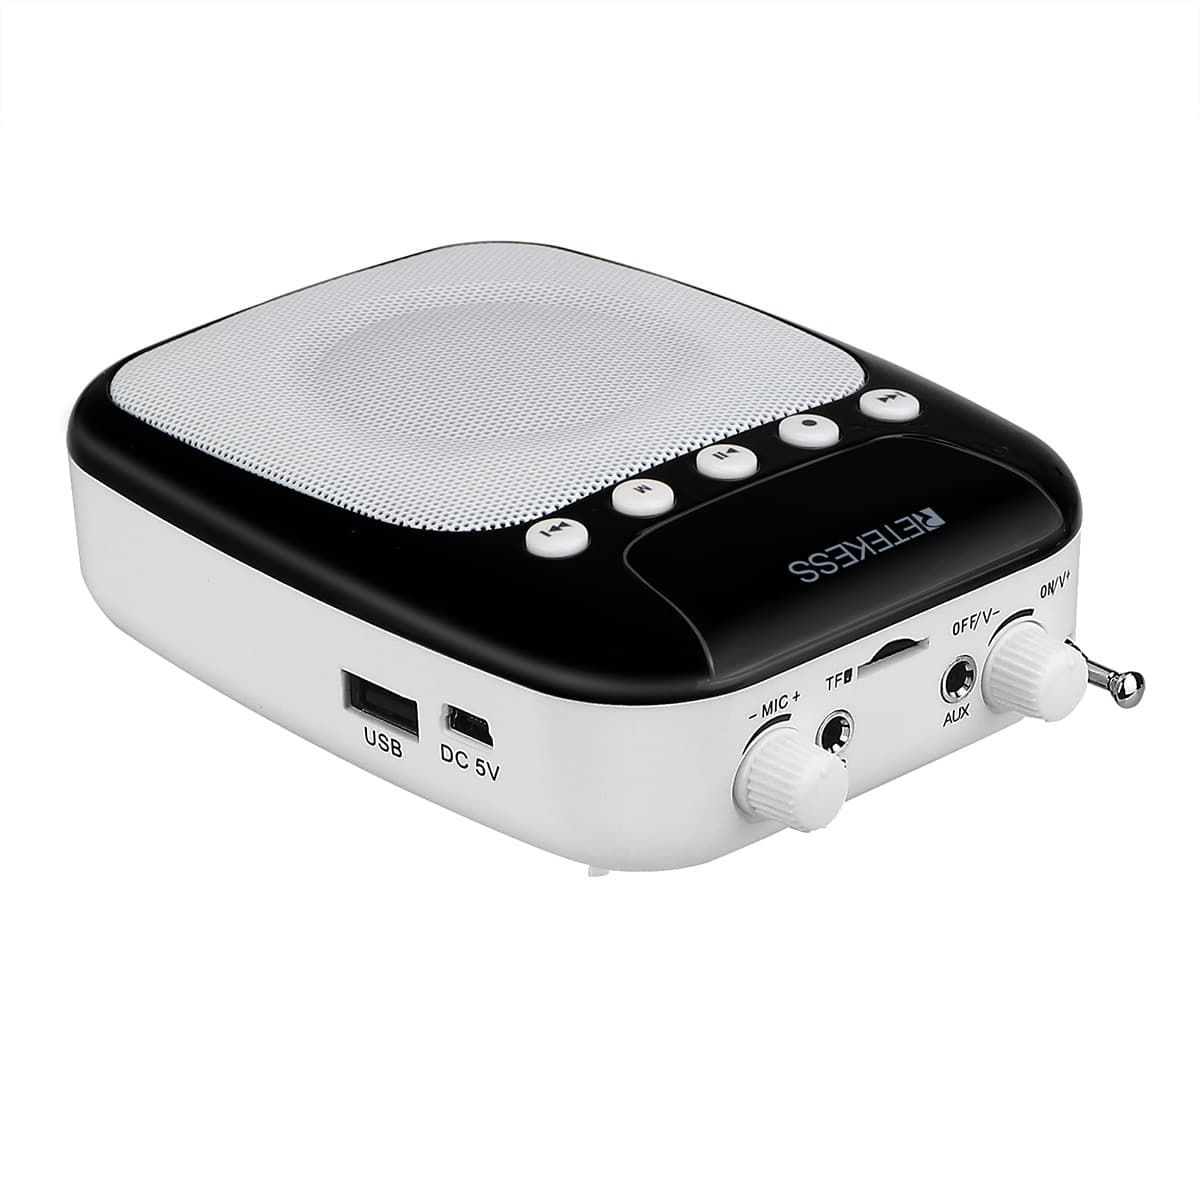 Retekess TR623 Amplificateur Vocal Portable